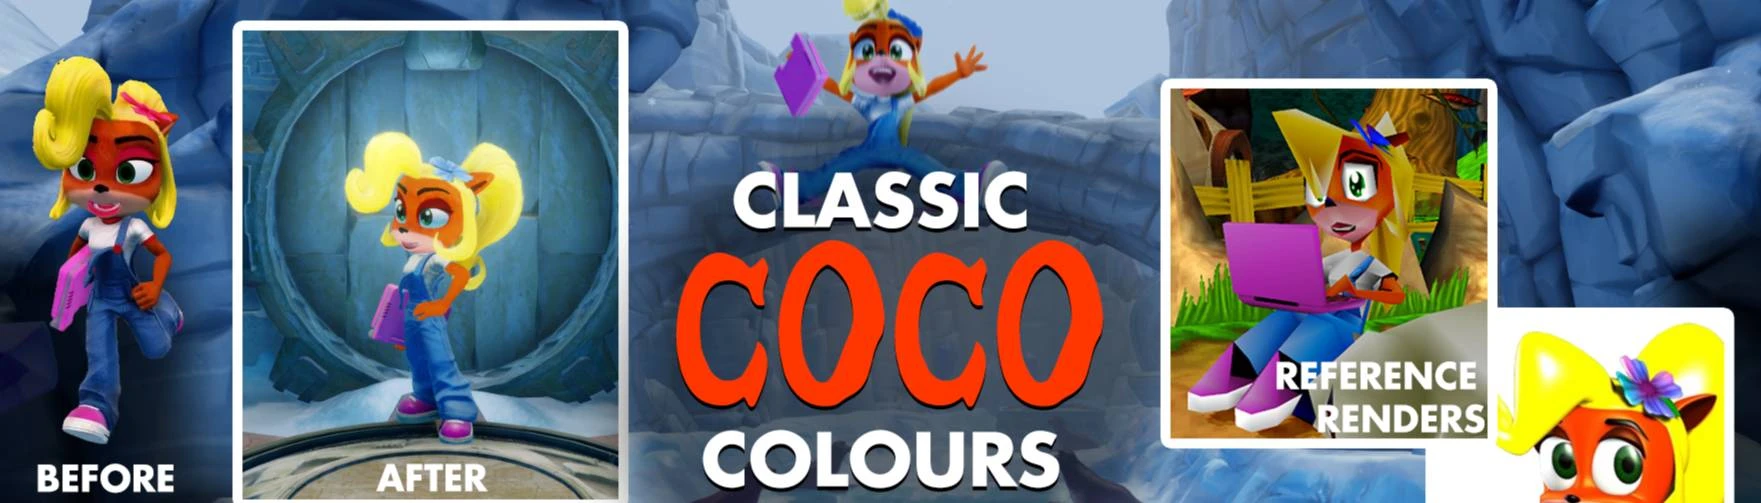 Classic Coco